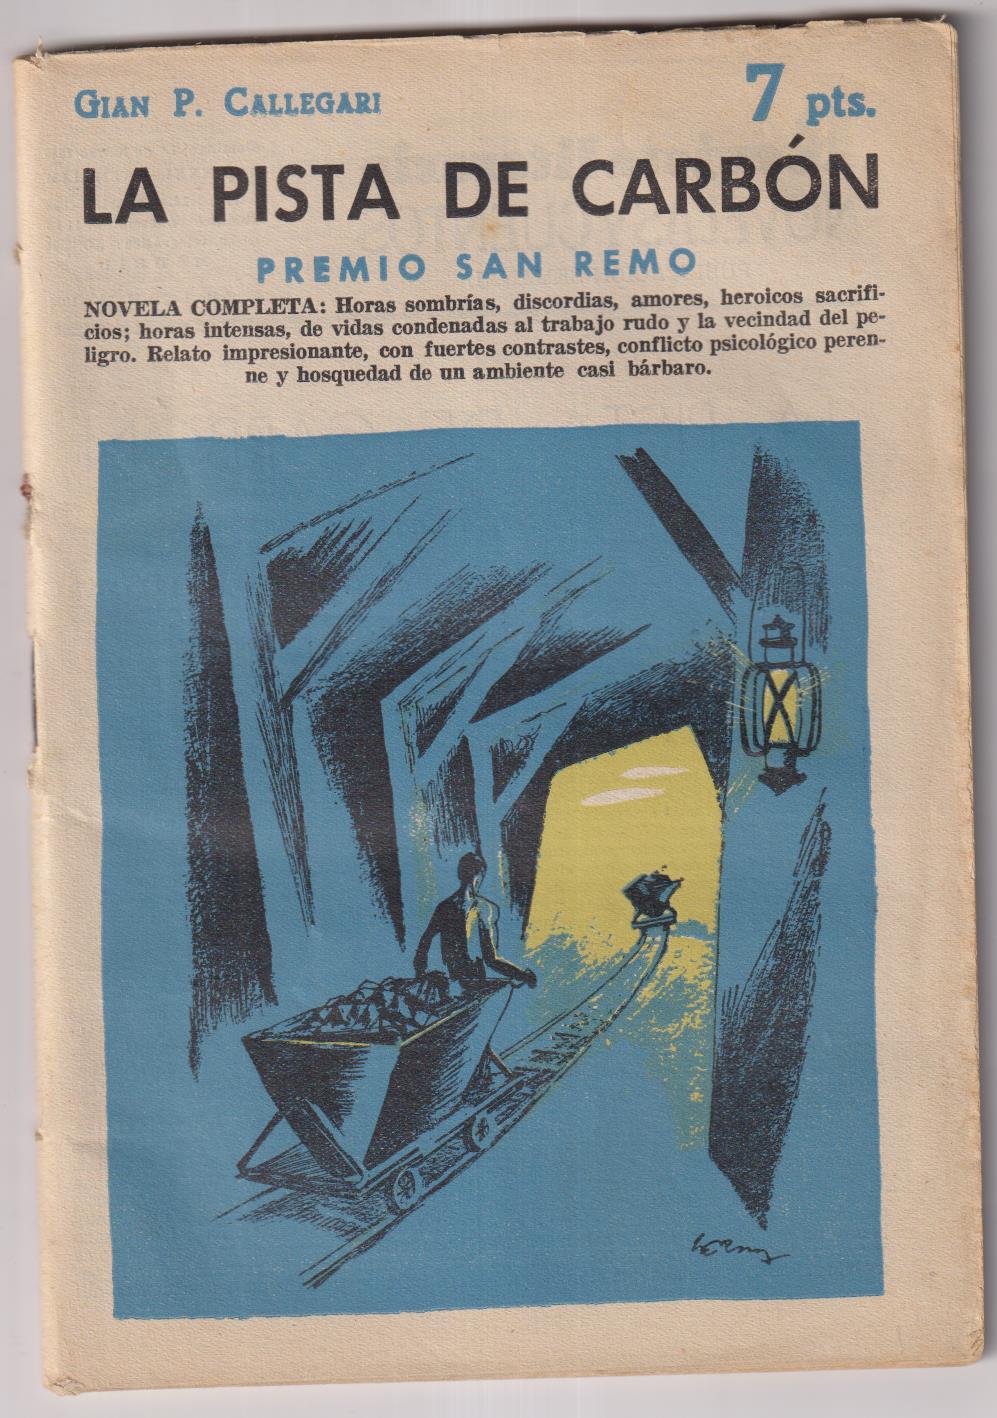 Revista Literaria Novelas y Cuentos nº 1451. Gian P. Callegari. La pista mde carbón, año 1959